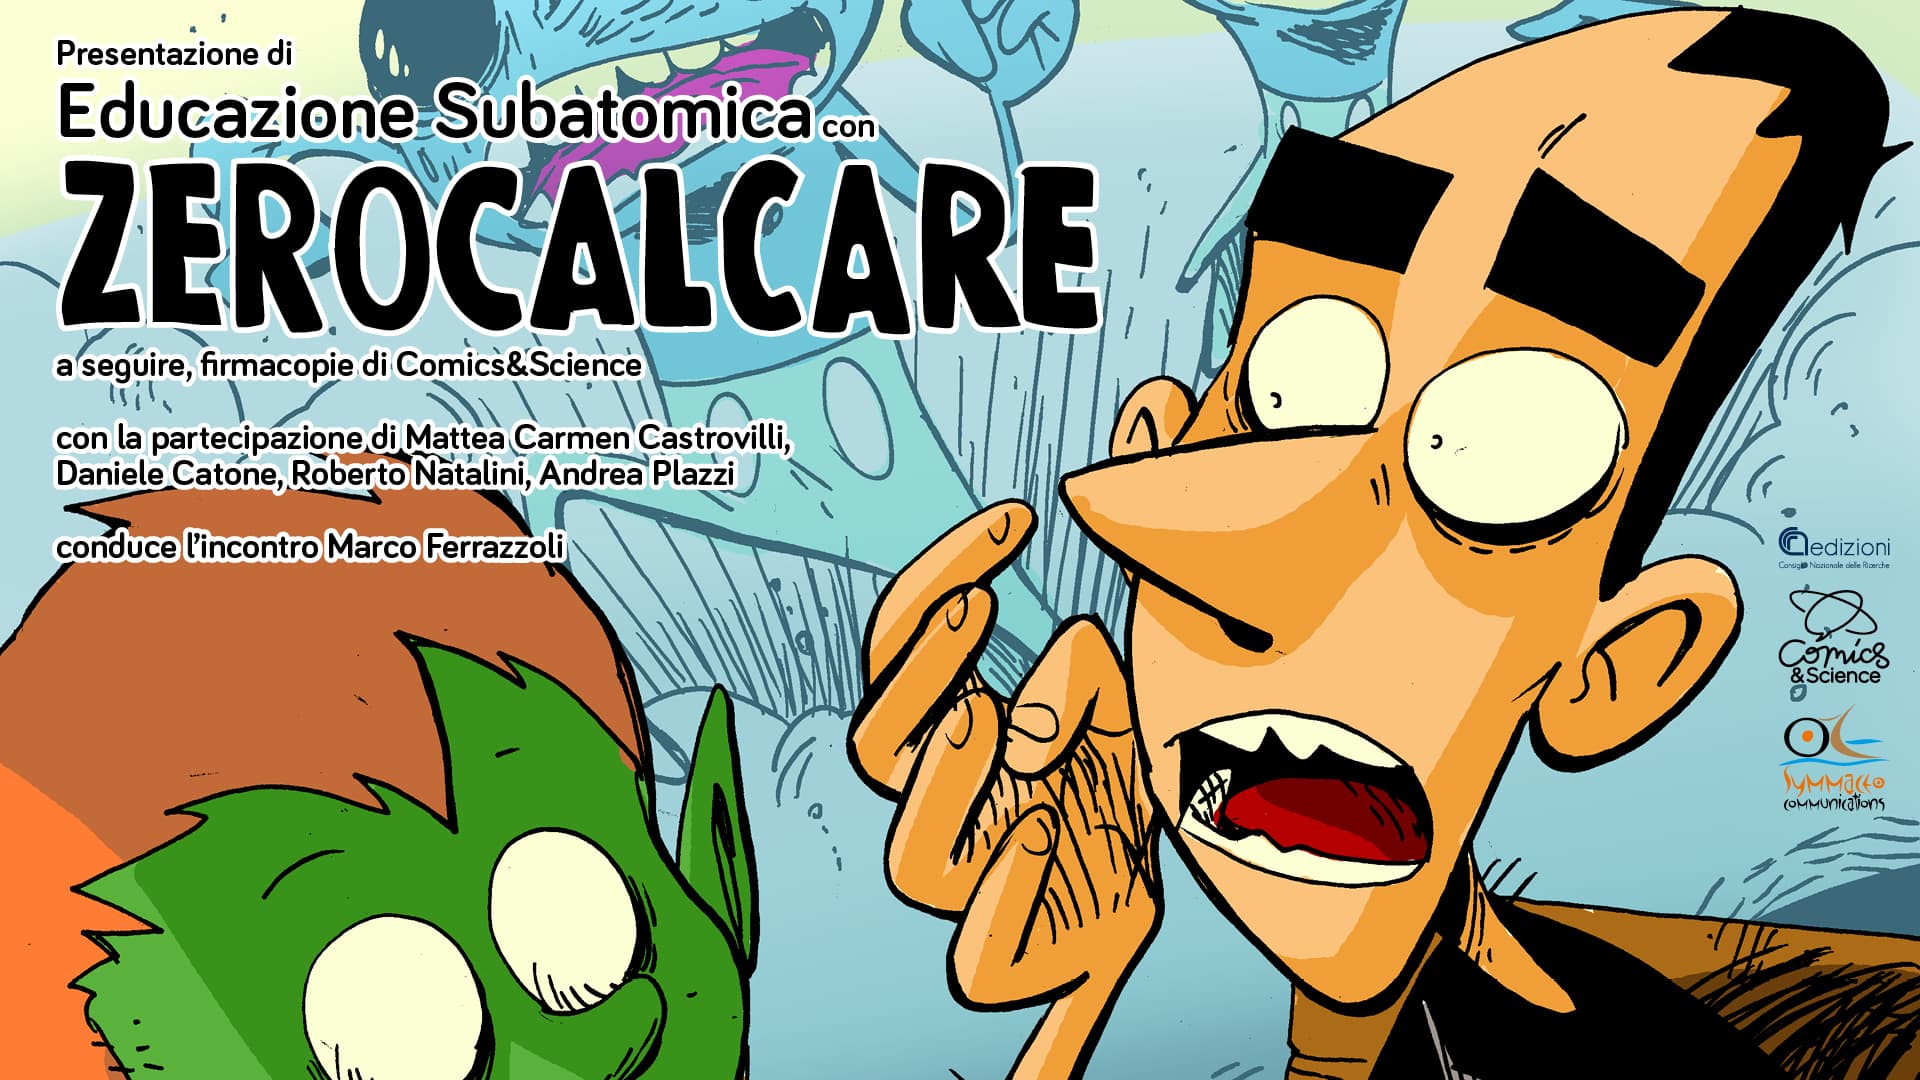 "Educazione subatomica": un incontro al CNR per presentare il fumetto di Zerocalcare thumbnail